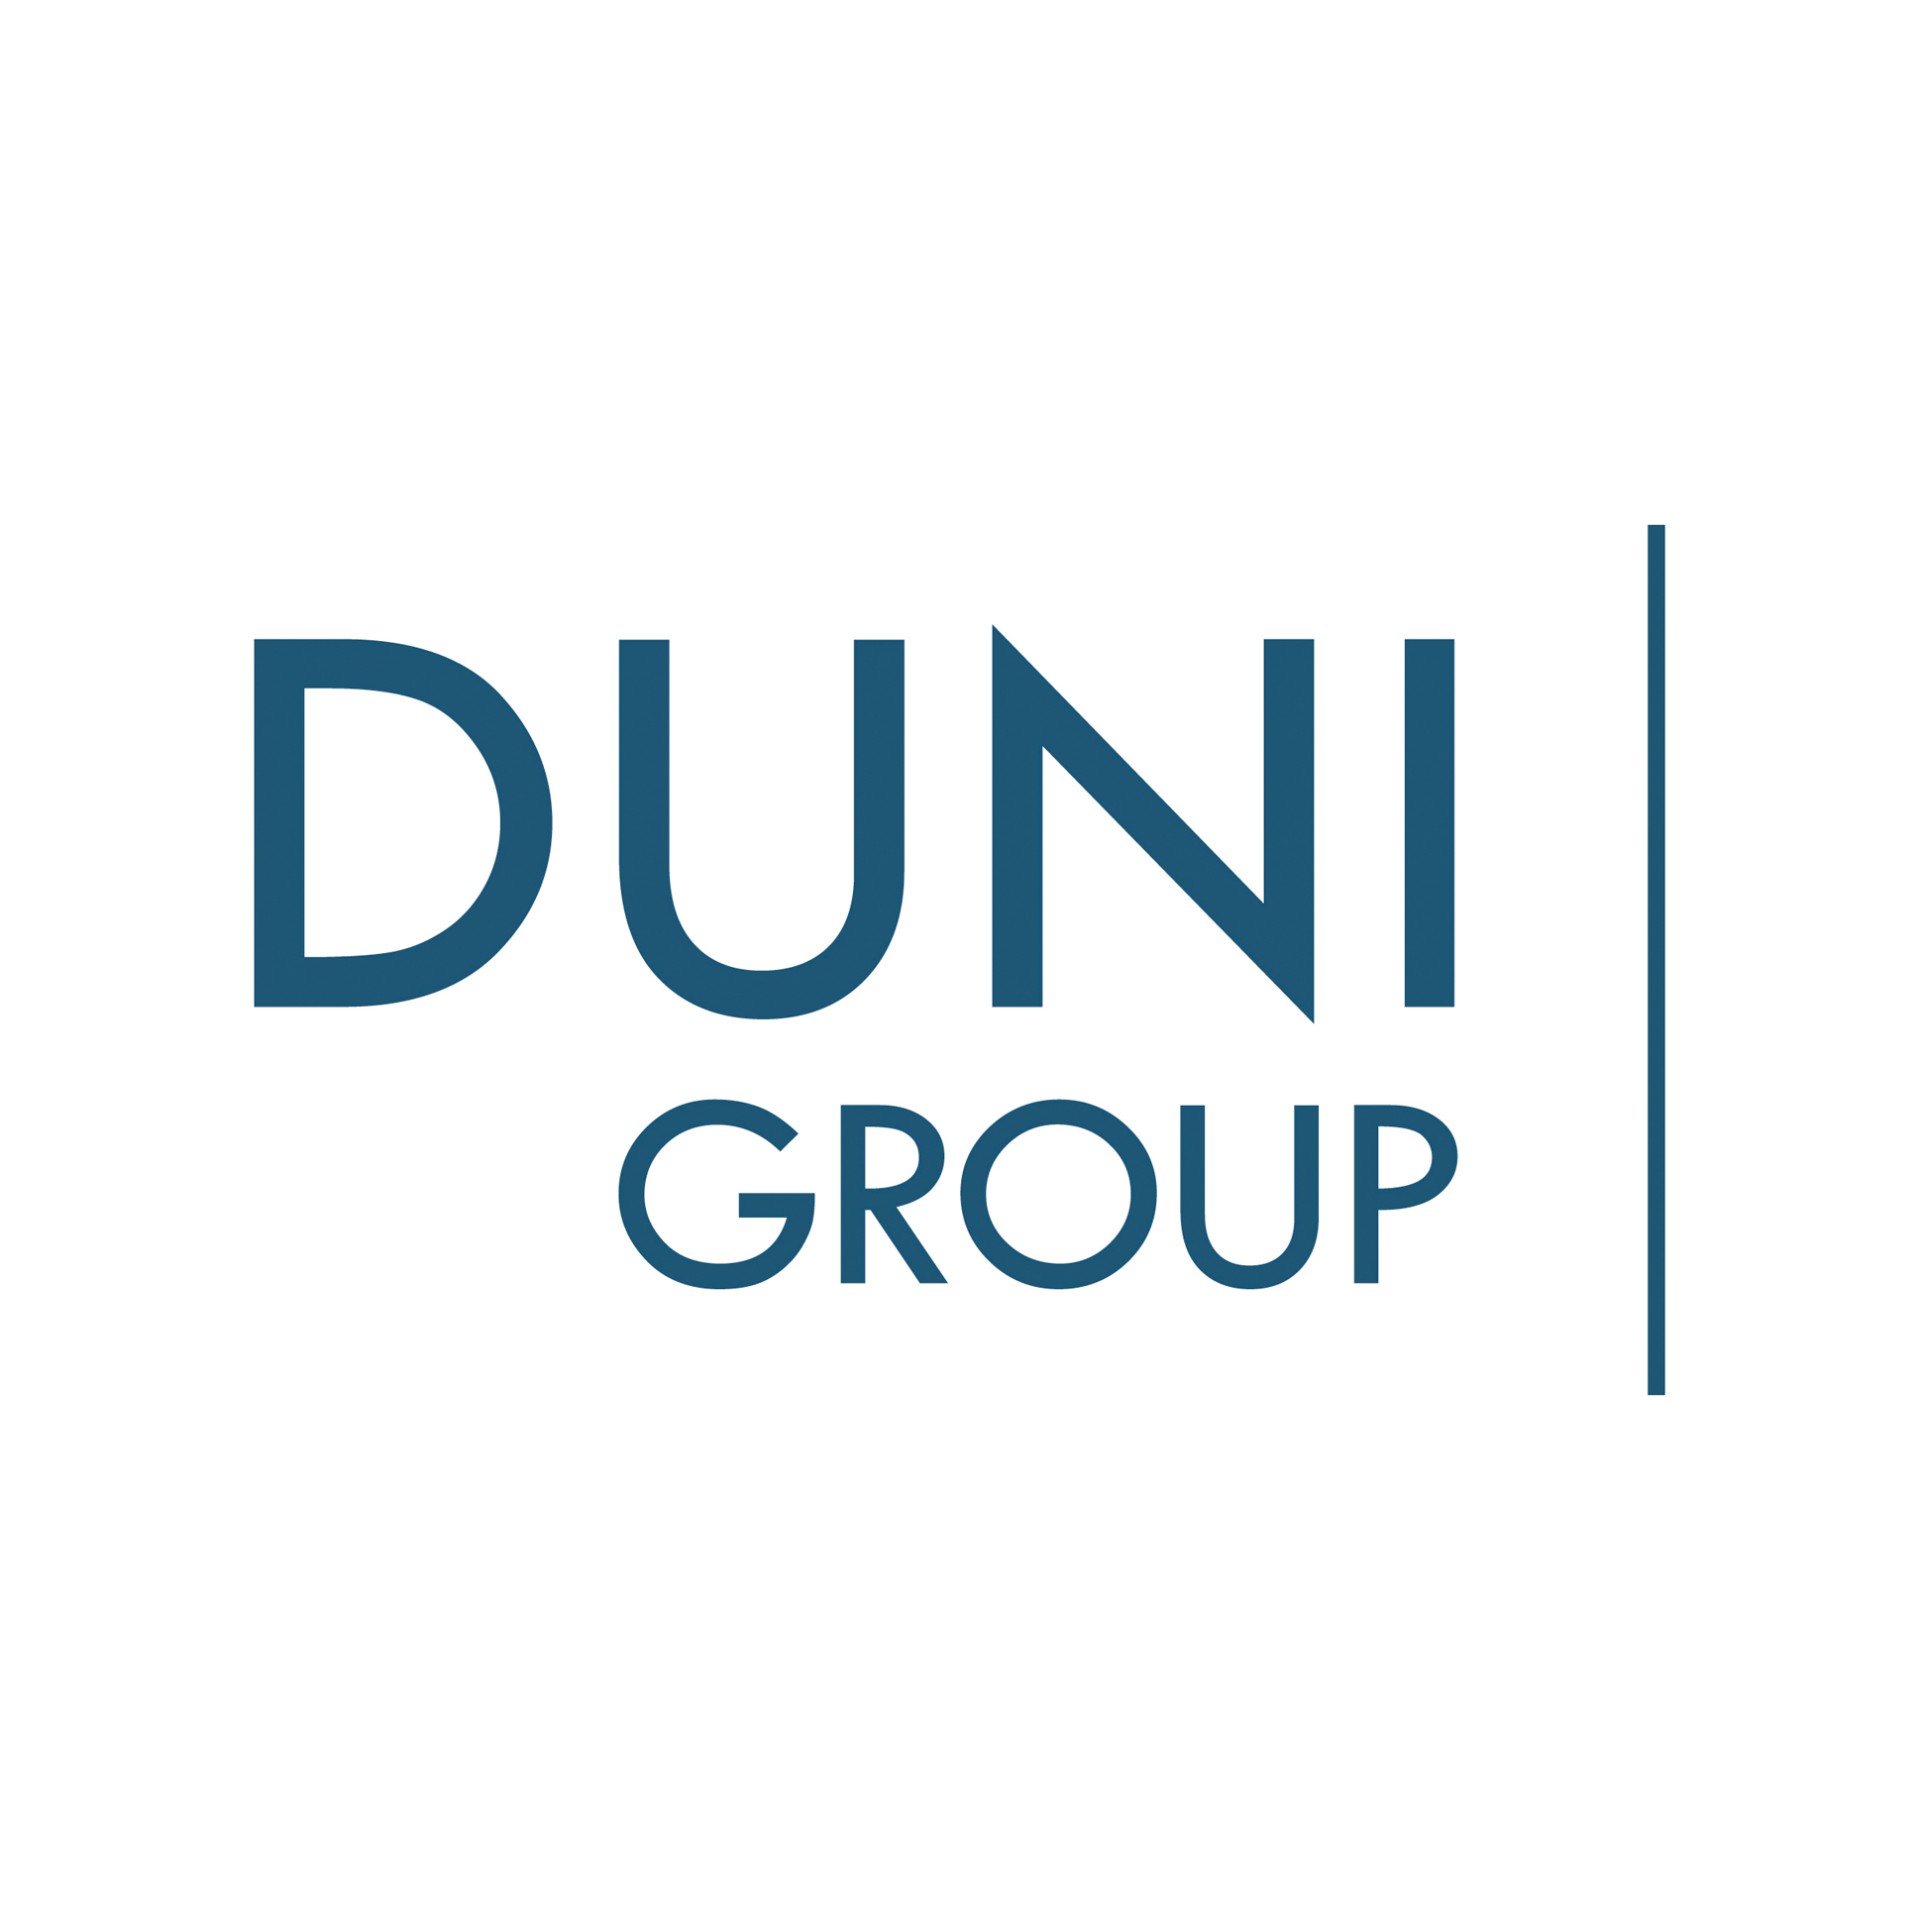 Duni Group